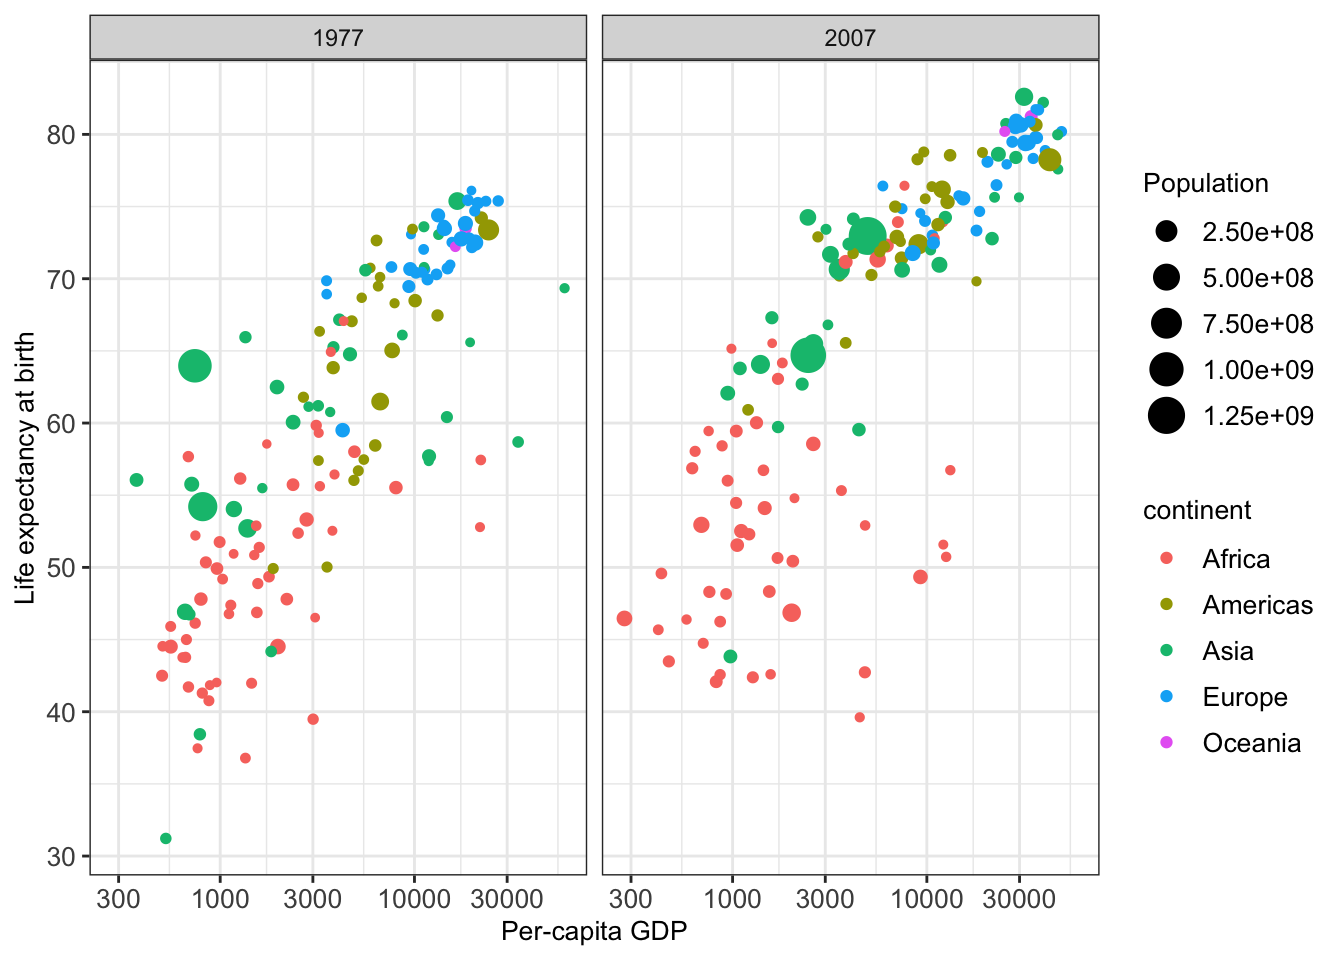 Illustrative figure for grammar of graphics based on the gapminder dataset.